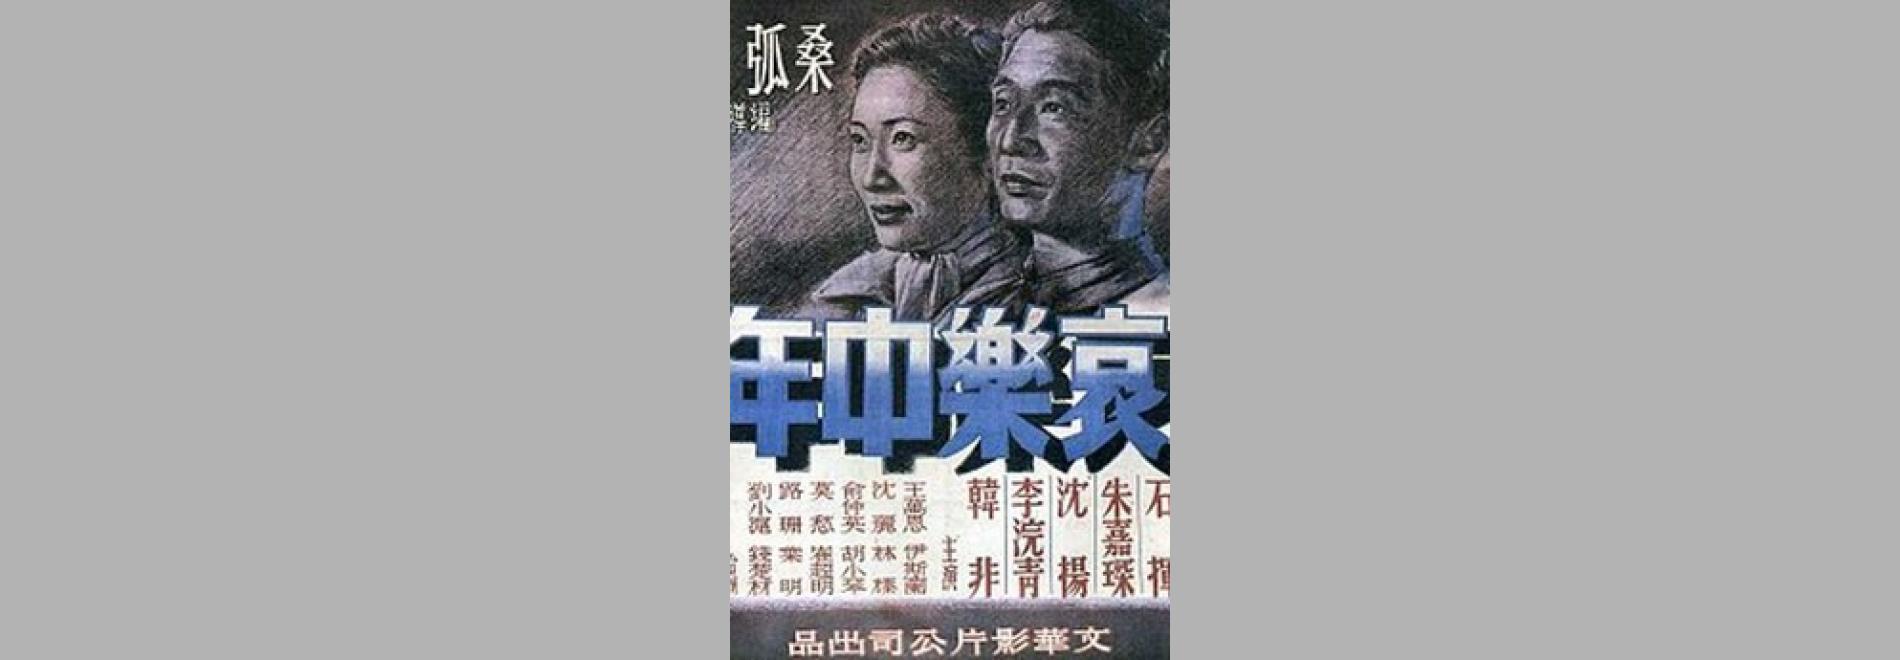 Ai le zhongnian / Tristesa i alegria de la maduresa (Sang Hu, 1949)